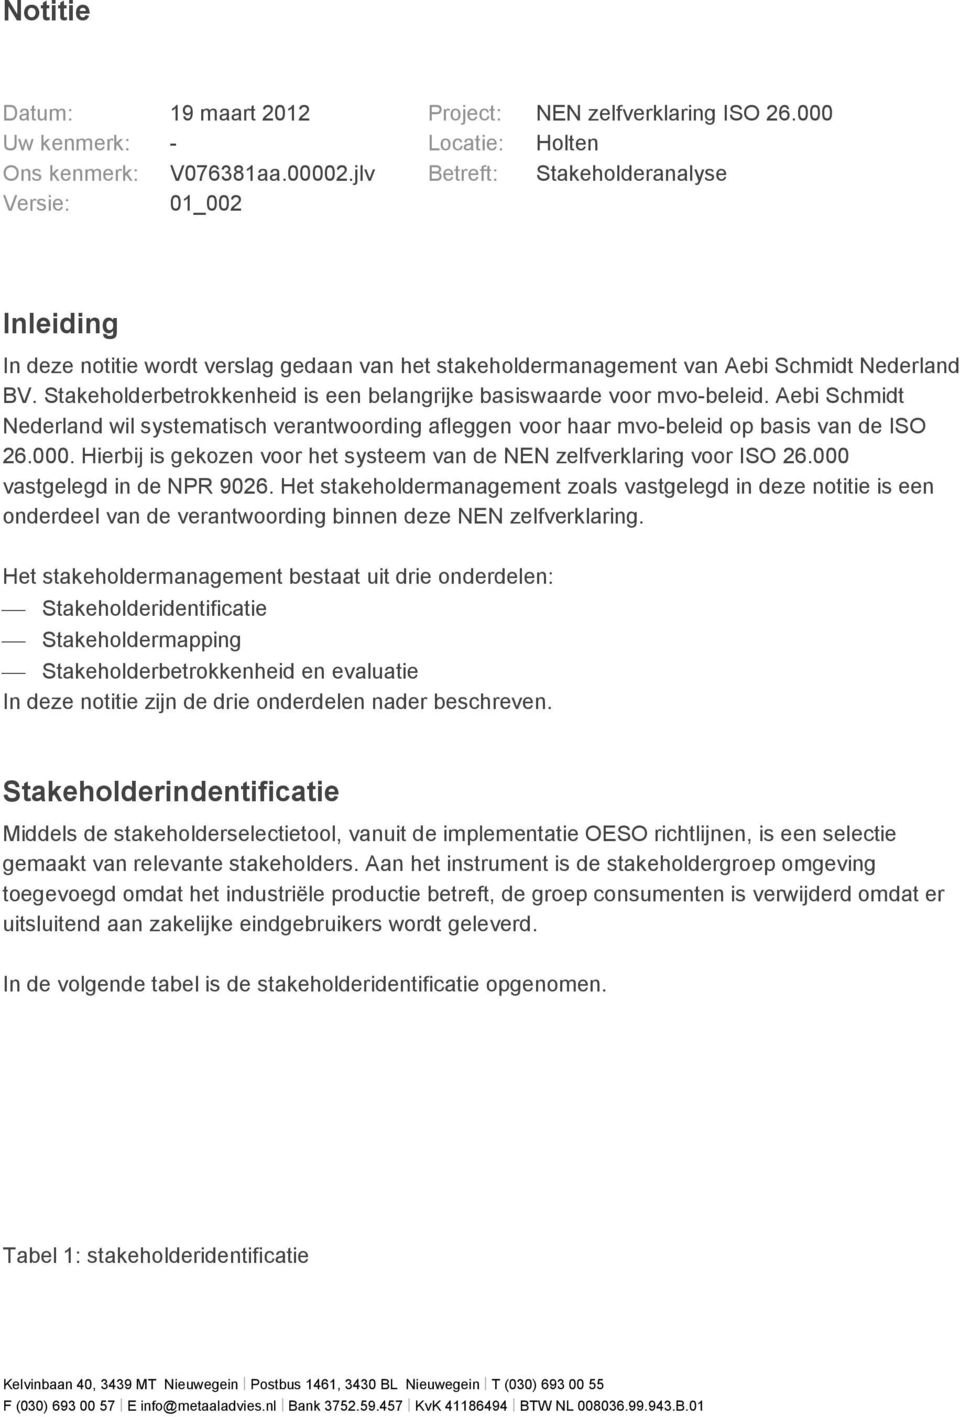 Stakeholderbetrokkenheid is een belangrijke basiswaarde voor mvo-beleid. Aebi Schmidt Nederland wil systematisch verantwoording afleggen voor haar mvo-beleid op basis van de ISO 26.000.